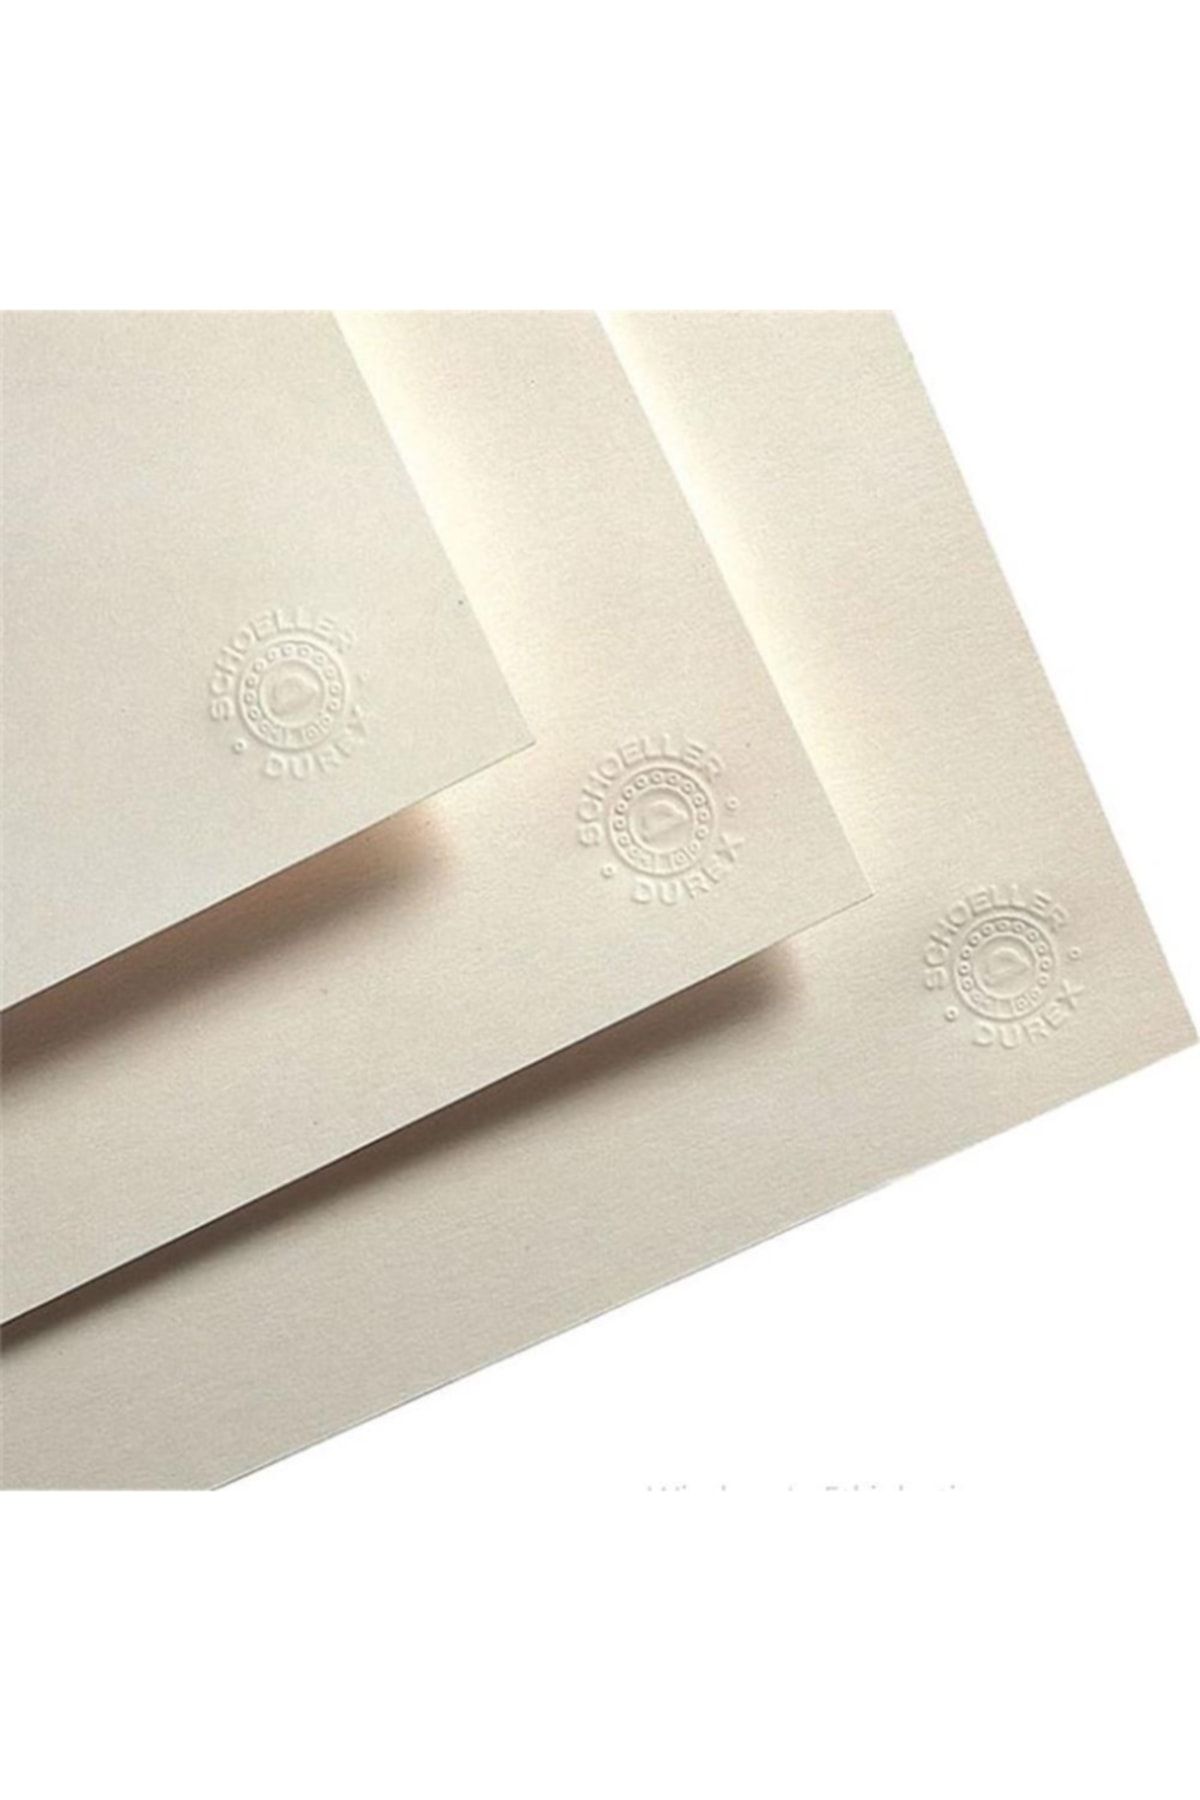 Genel Markalar Teknik Resim Kağıdı Durex (100 Lü) A4 200 Gr Sh-d201